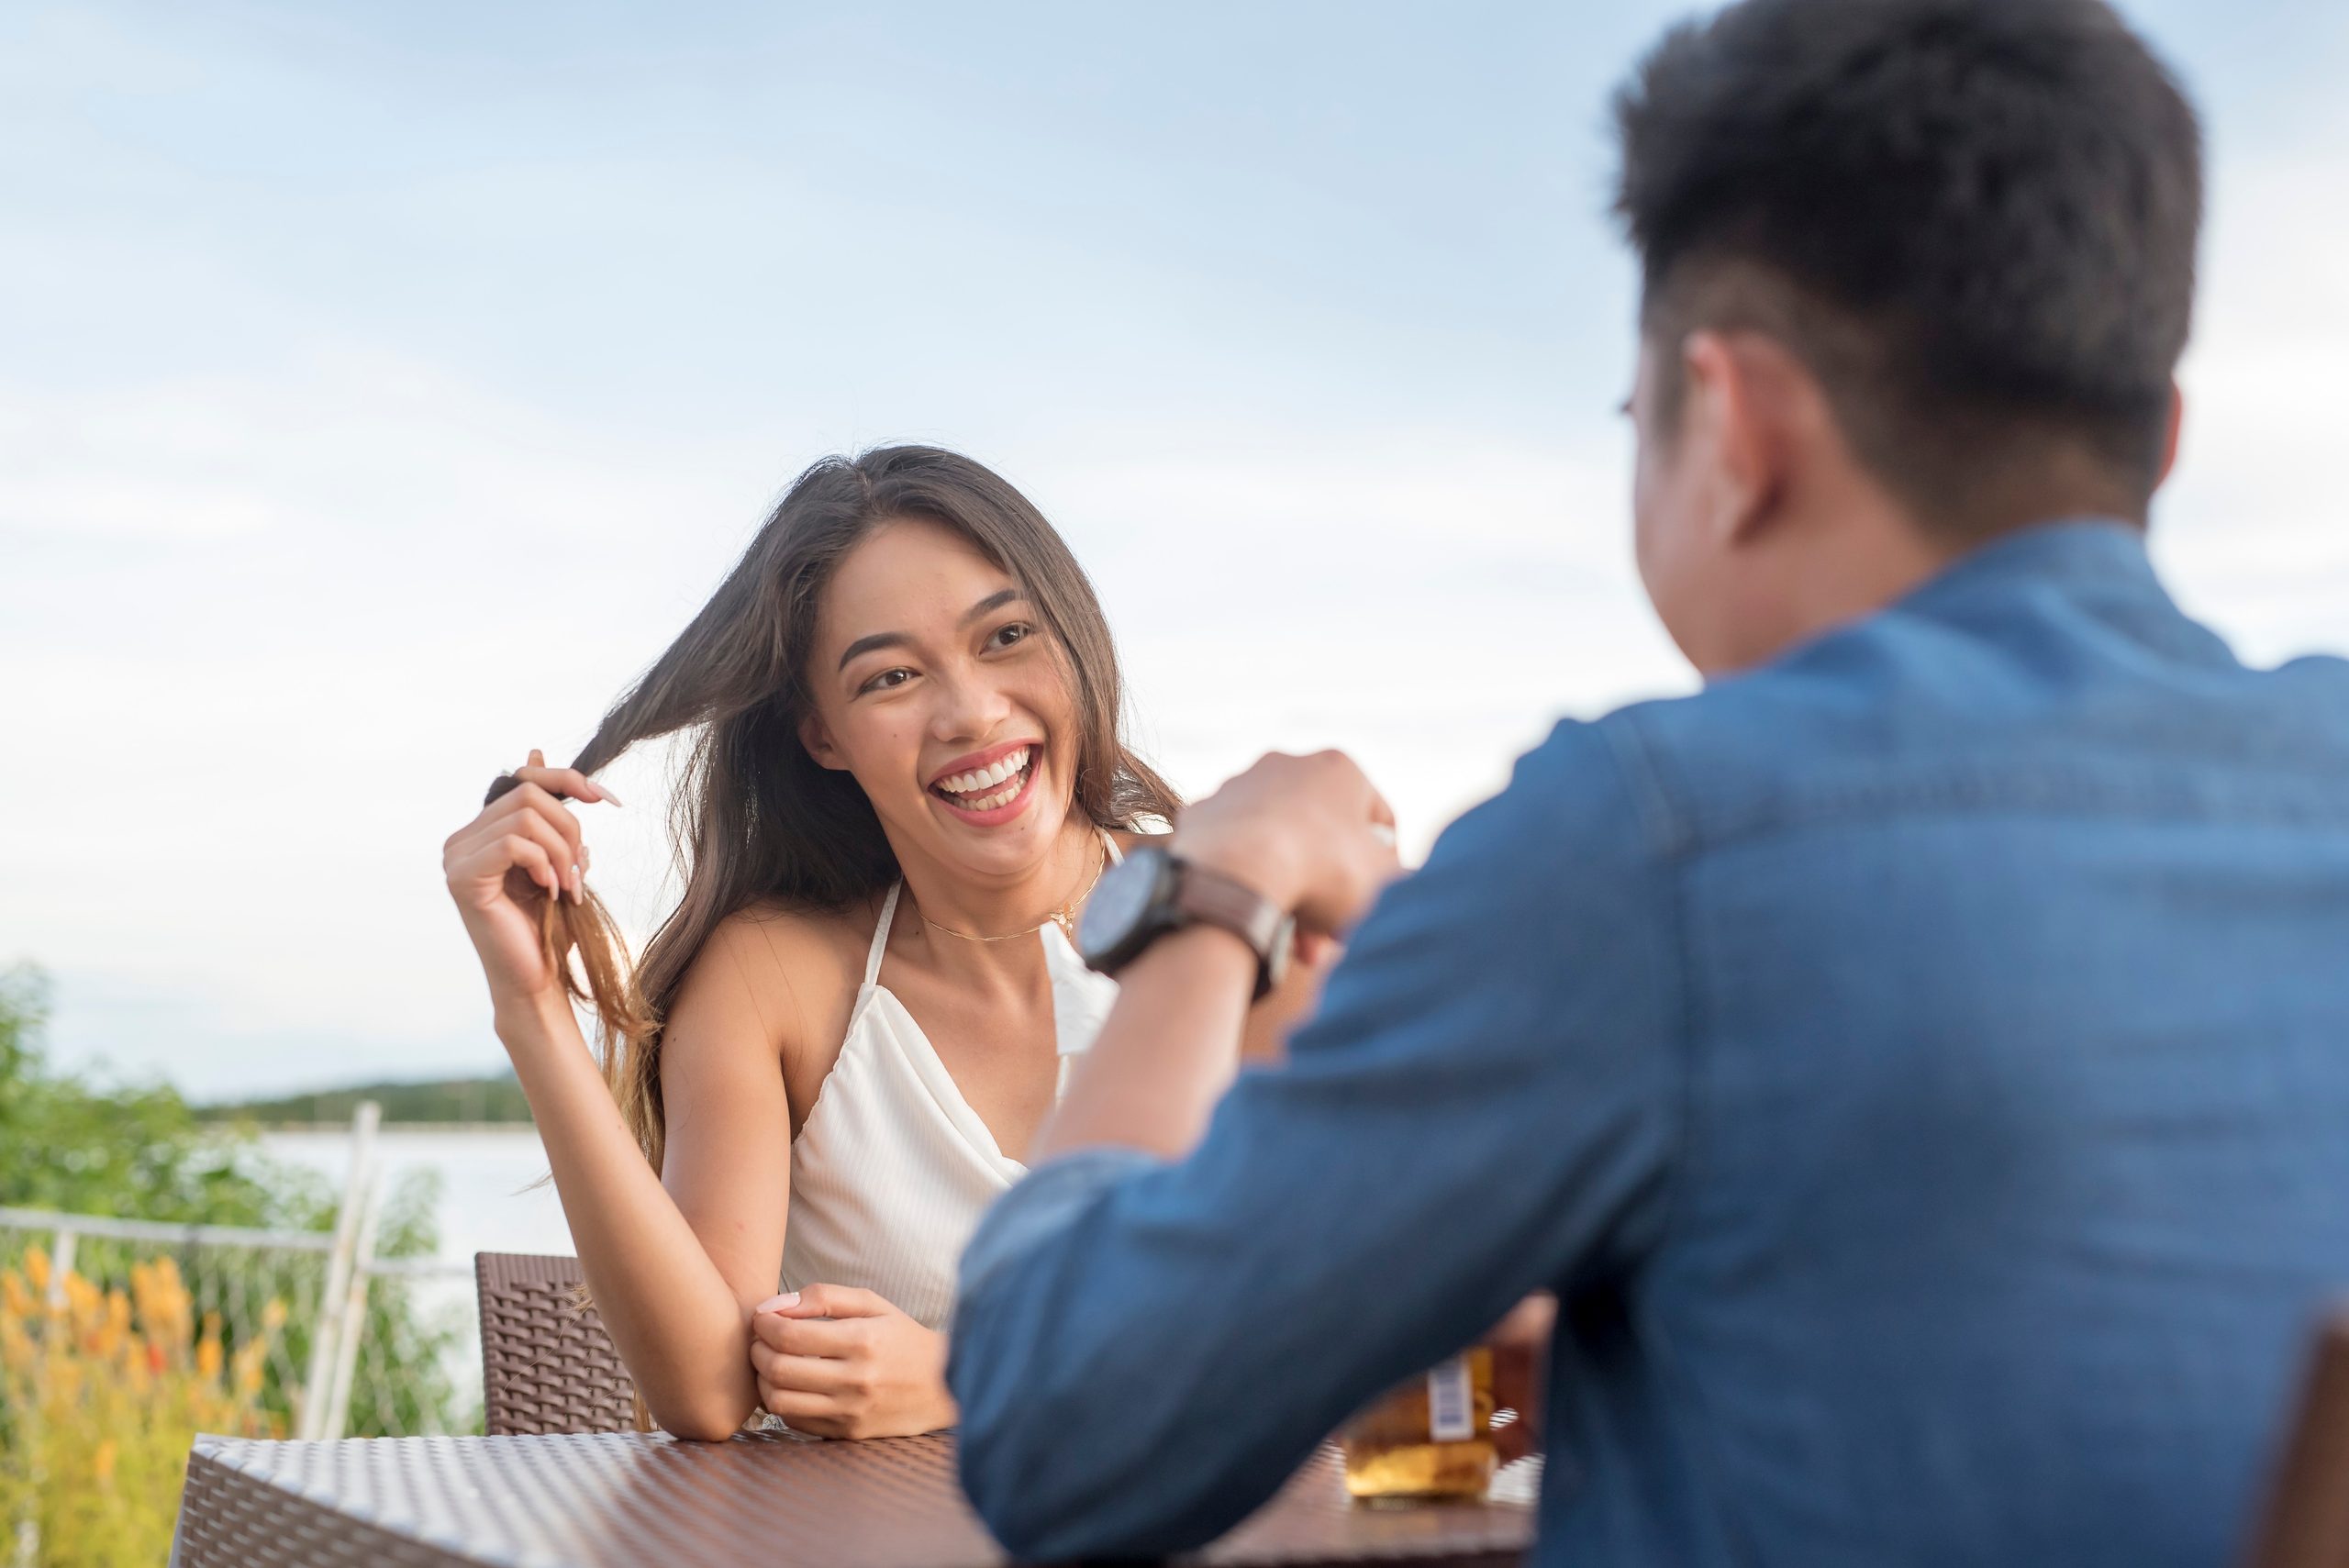 Eine junge Frau wirbelt sich die Haare, während sie ihr Date aufmerksam zuhört. Interessiert und angezogen für einen Mann, den sie mag. Ein erstes Date geht gut. Café-Szene im Freien.